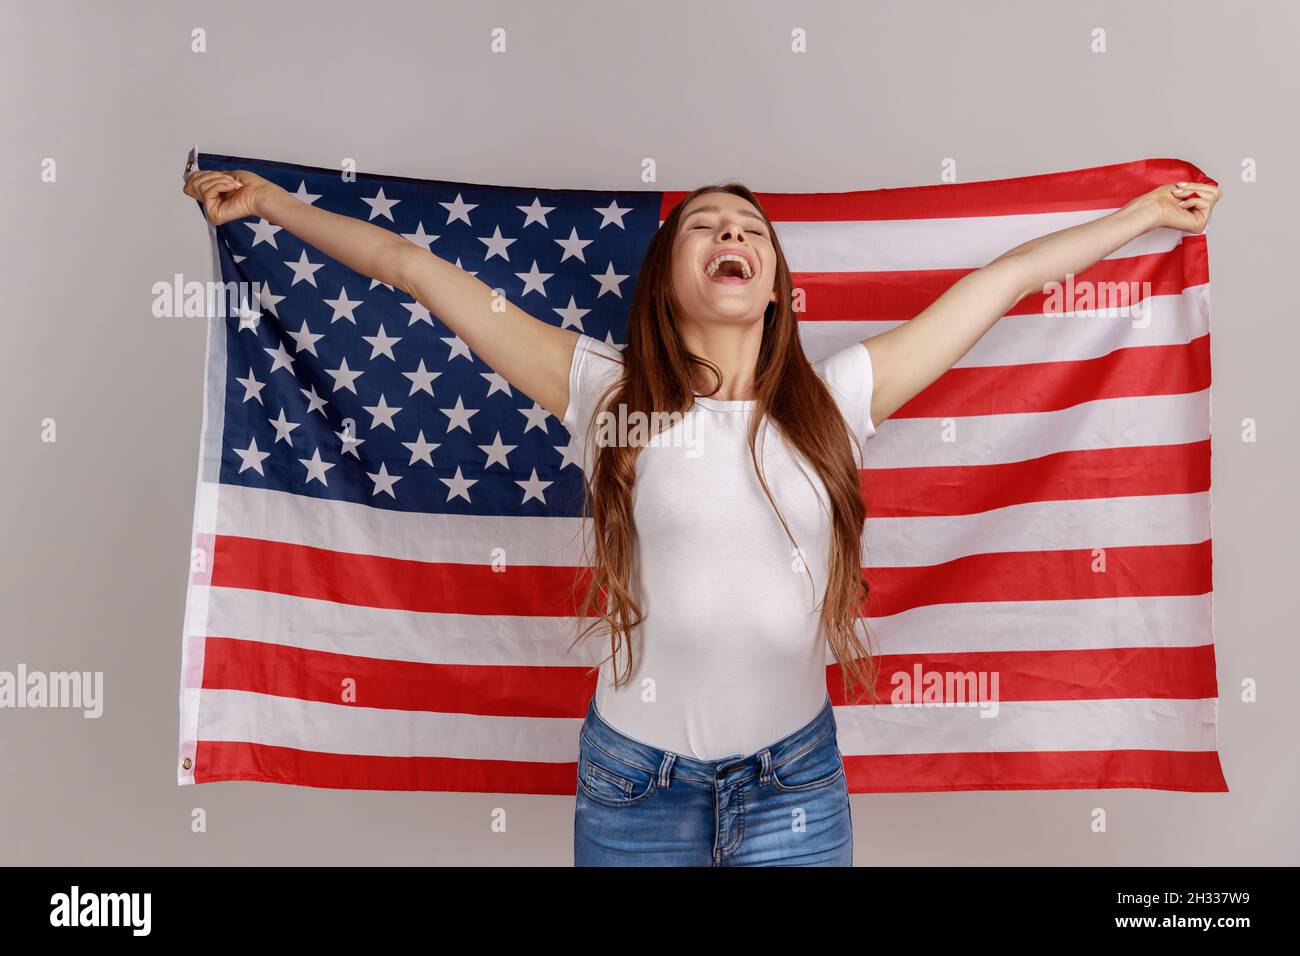 Porträt einer attraktiven, schönen jungen Frau mit dunklem Haar, die die USA-Flagge über den Schultern hält und sich glücklich freut, das weiße T-Shirt trägt. Innenaufnahme des Studios isoliert auf grauem Hintergrund. Stockfoto